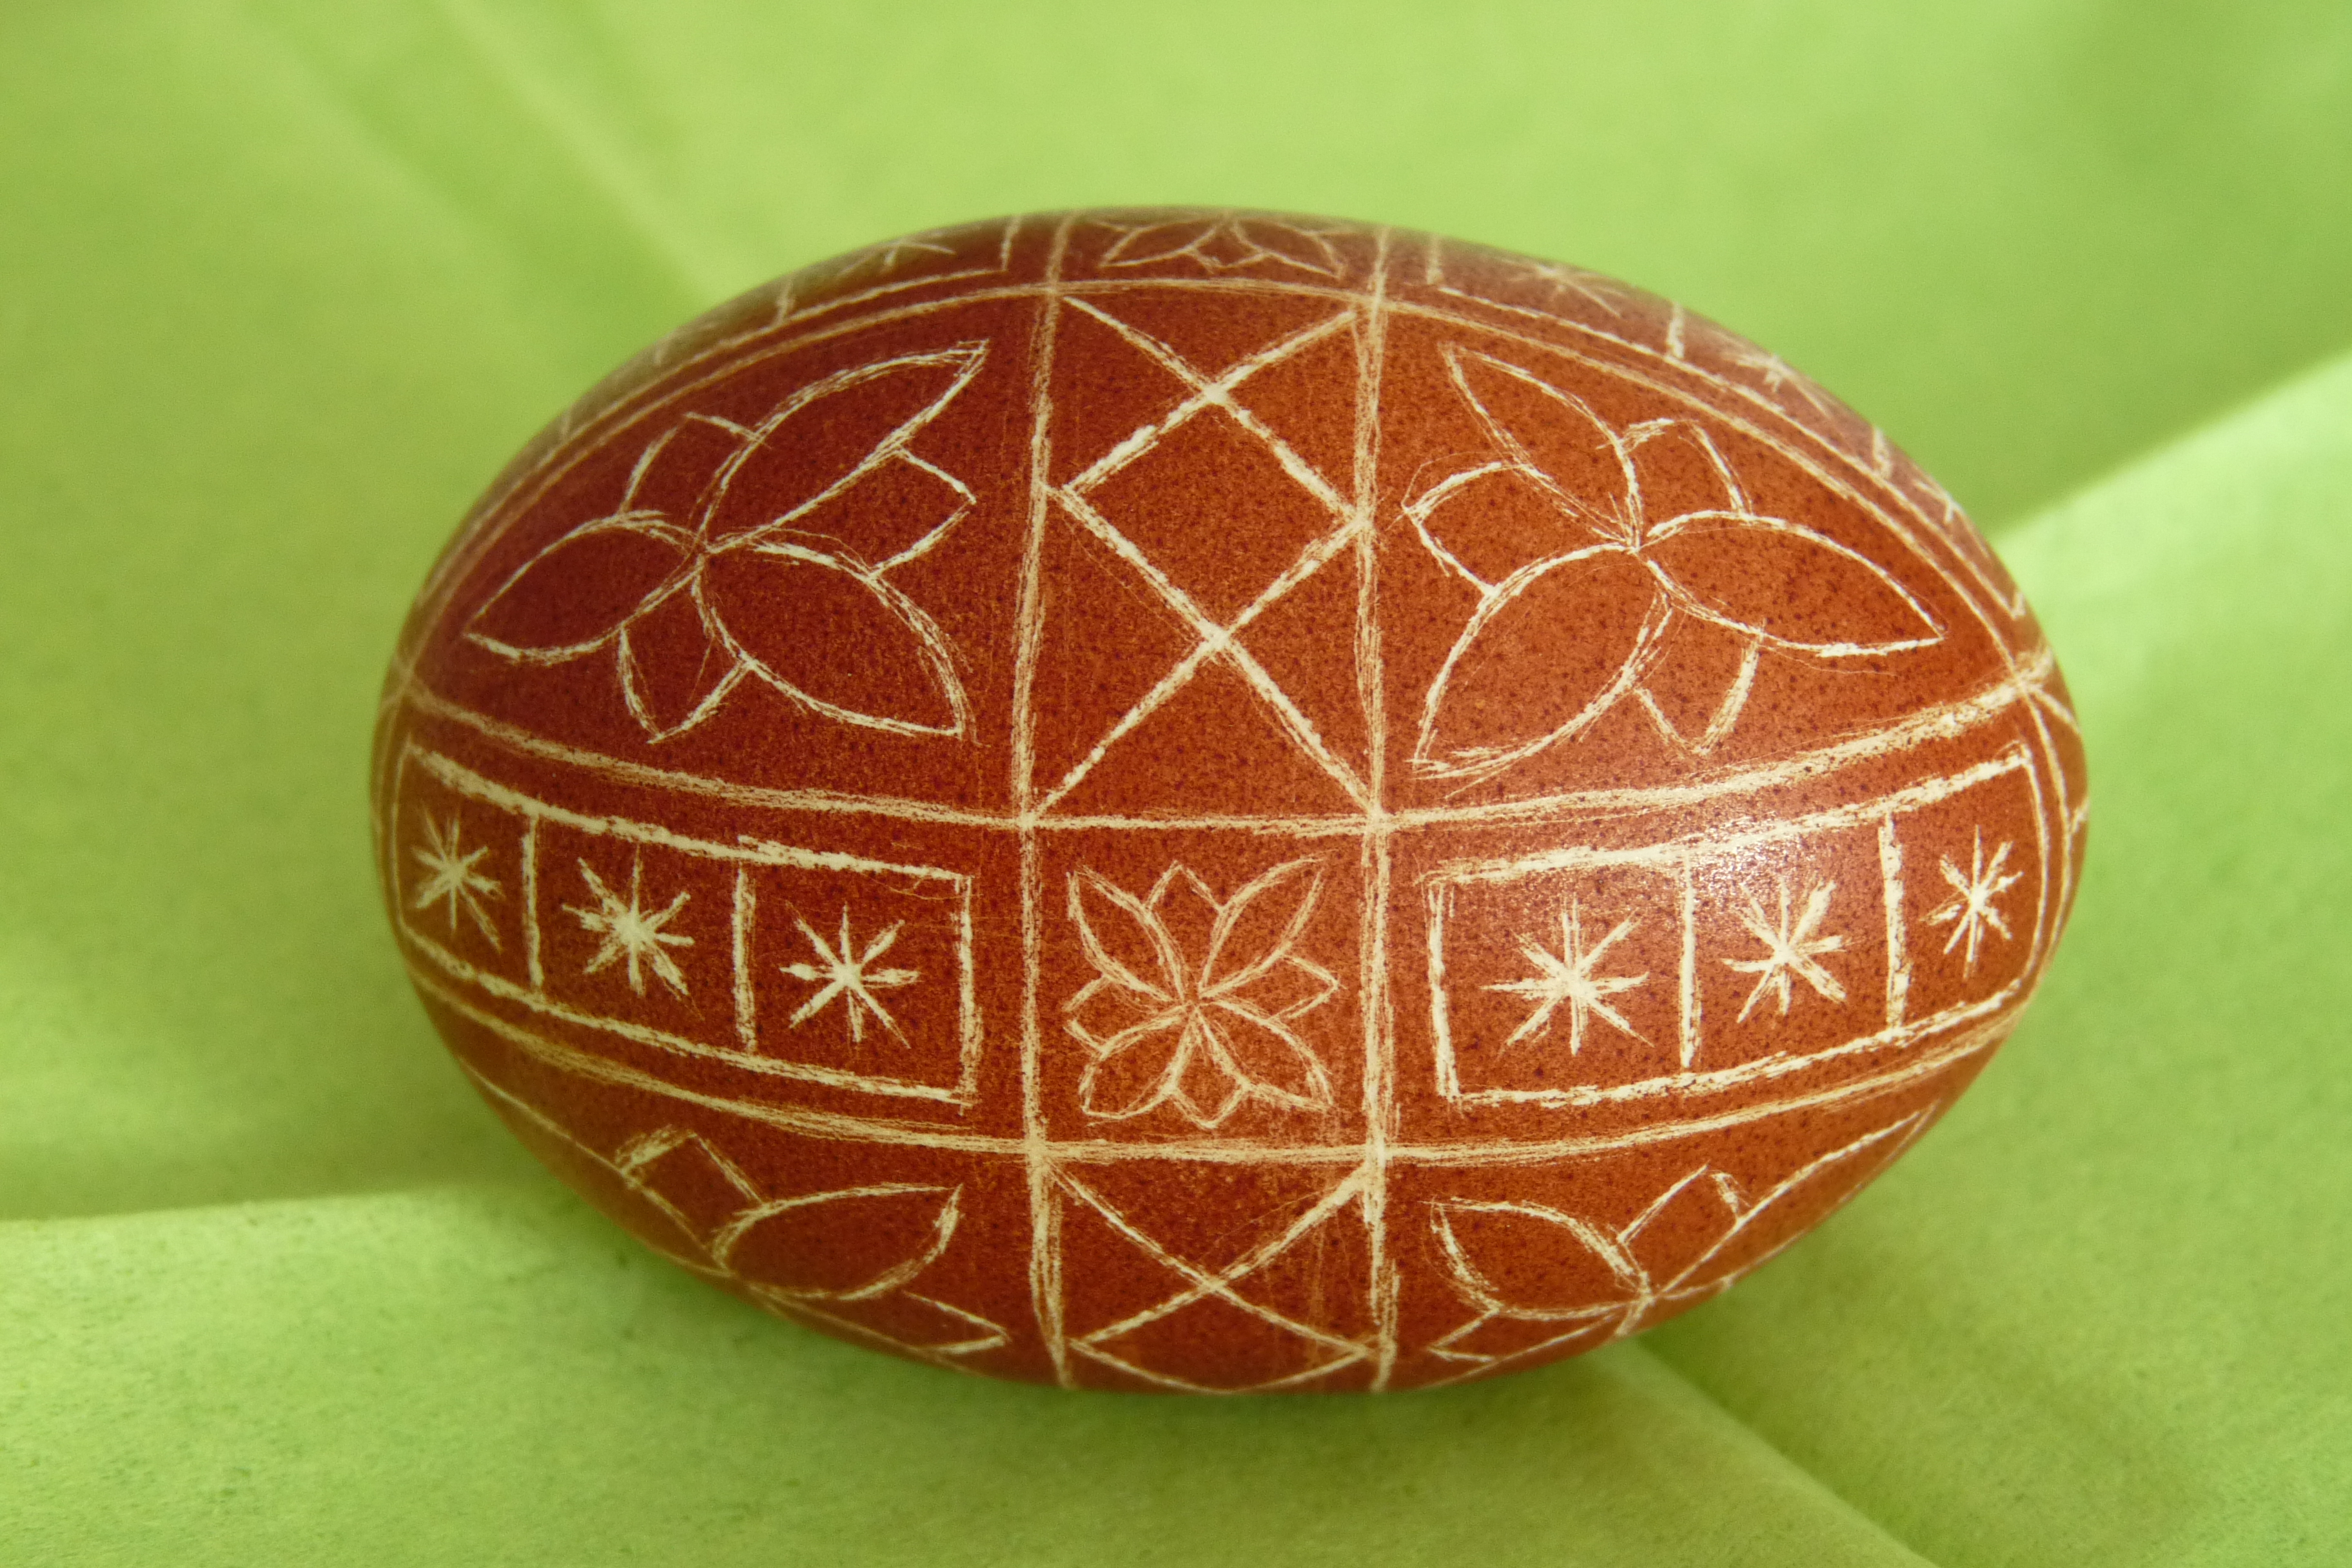 Easter egg - Kroton 019